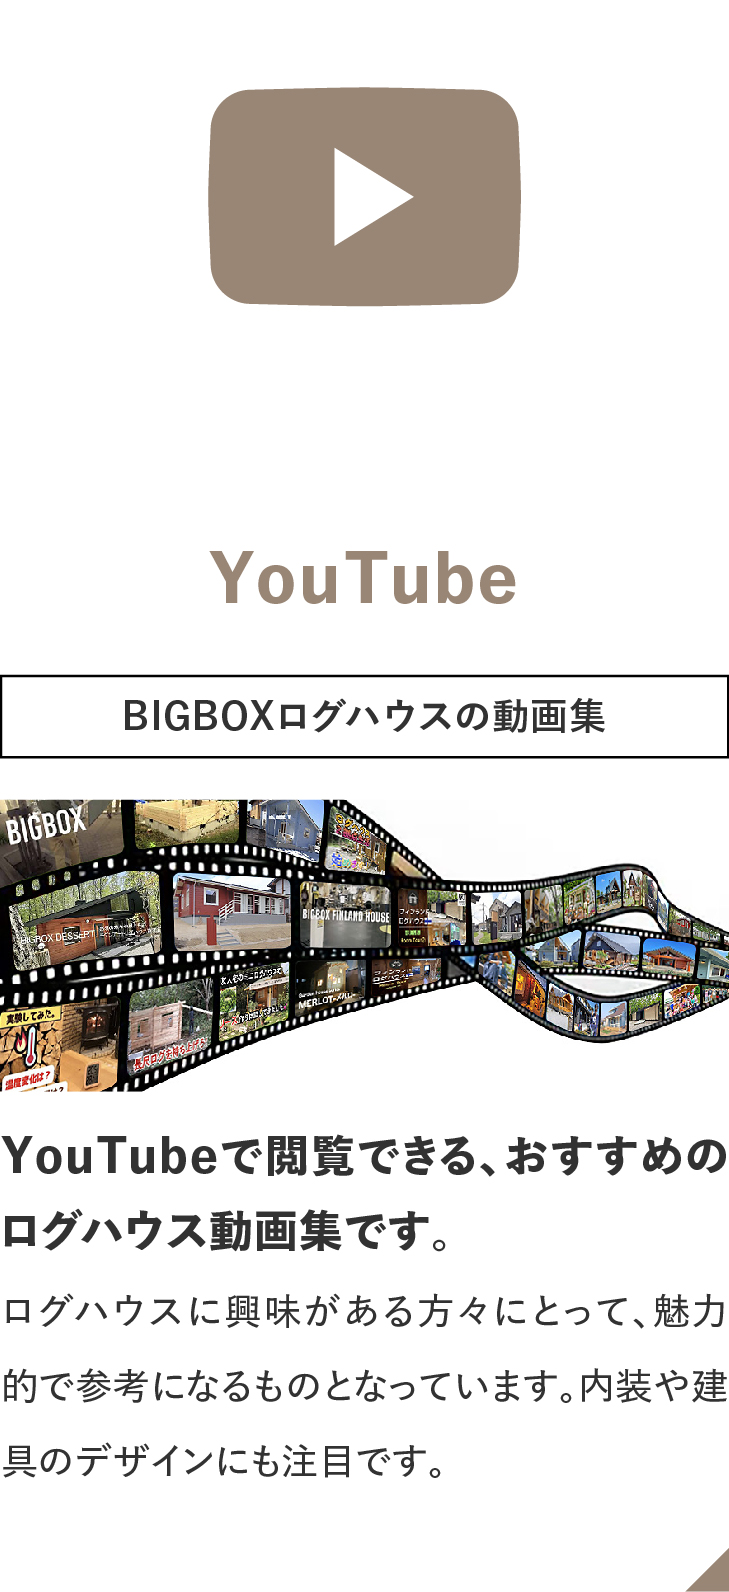 ログハウスのビックボックス,BIGBOX DESSERT,実績紹介,Youtube